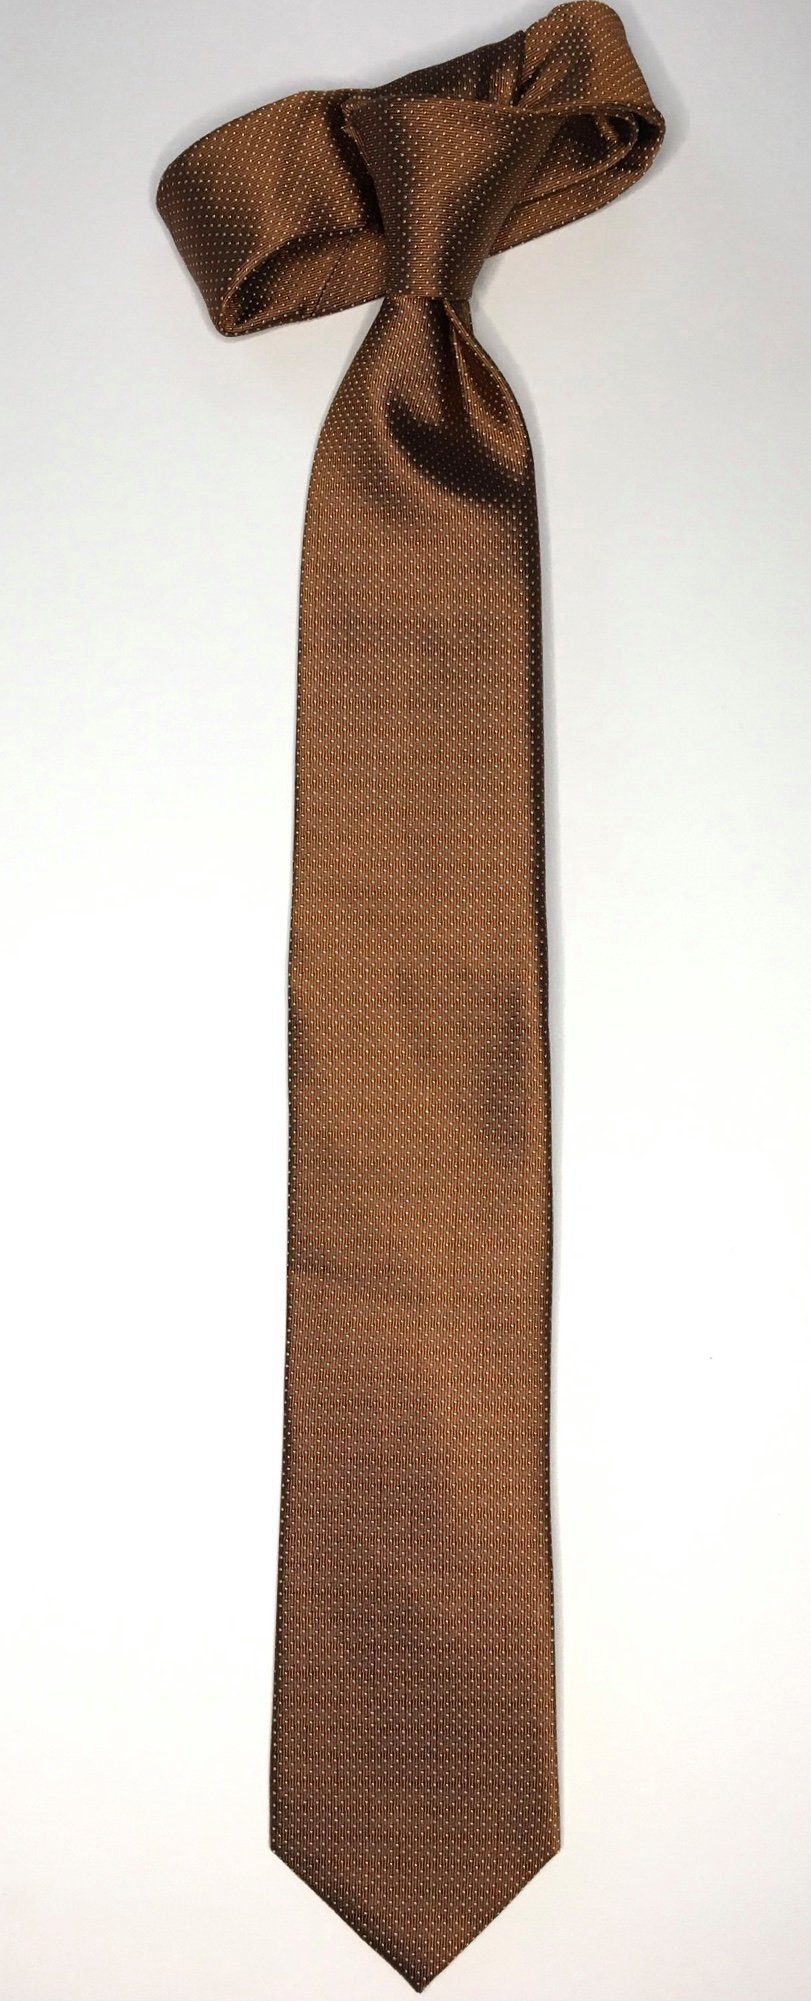 Seidenfalter Krawatte Seidenfalter 6cm Picoté Seidenfalter Picoté Krawatte Design Cognac edlen im Krawatte